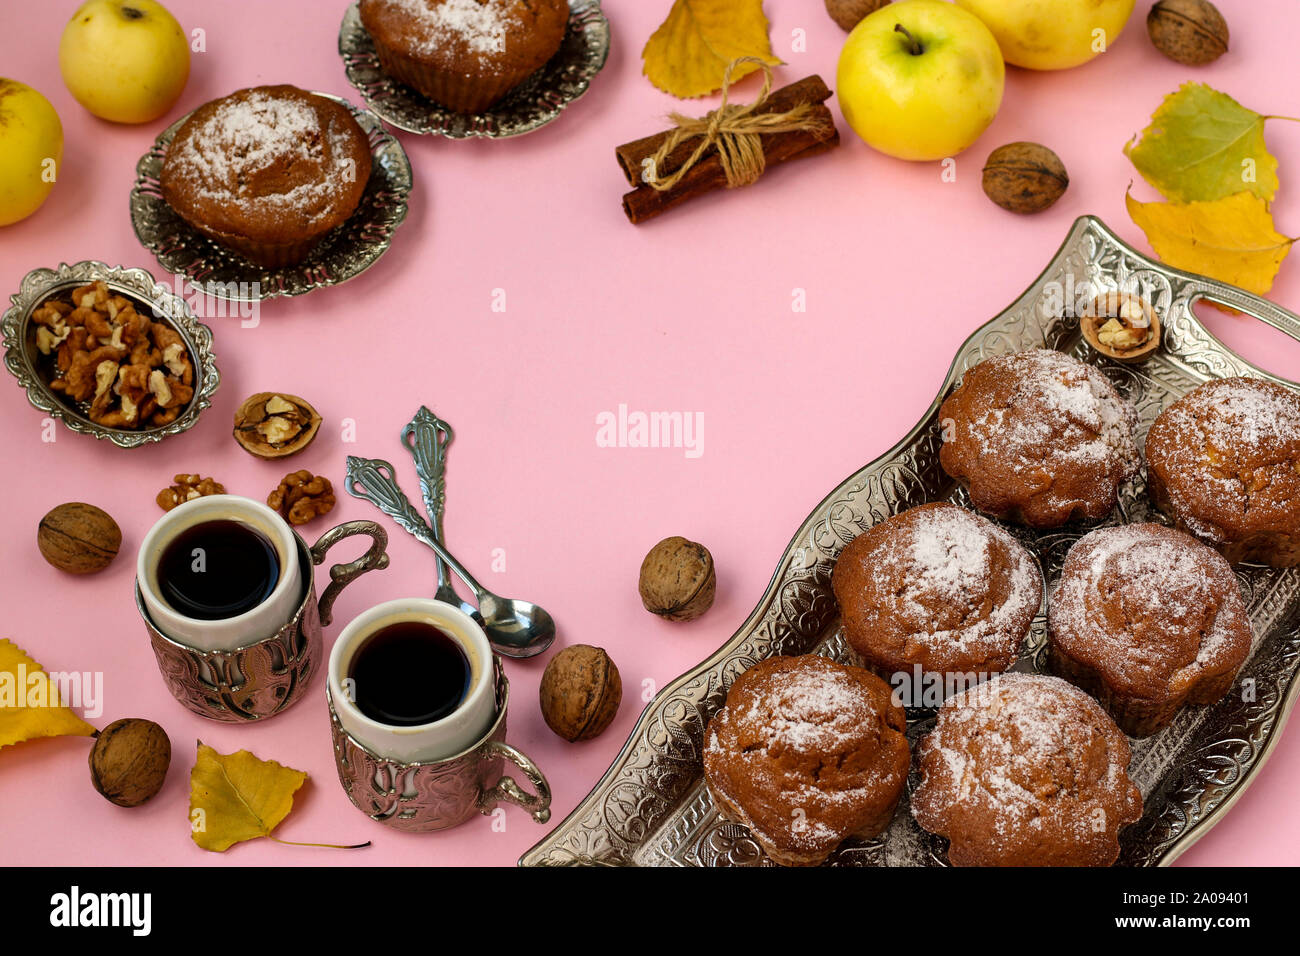 Hausgemachte Muffins mit Äpfel und Nüsse und zwei Tassen Kaffee auf einem rosa Hintergrund angeordnet, Ansicht von oben, Kopieren, Herbst Komposition, horizontal Stockfoto